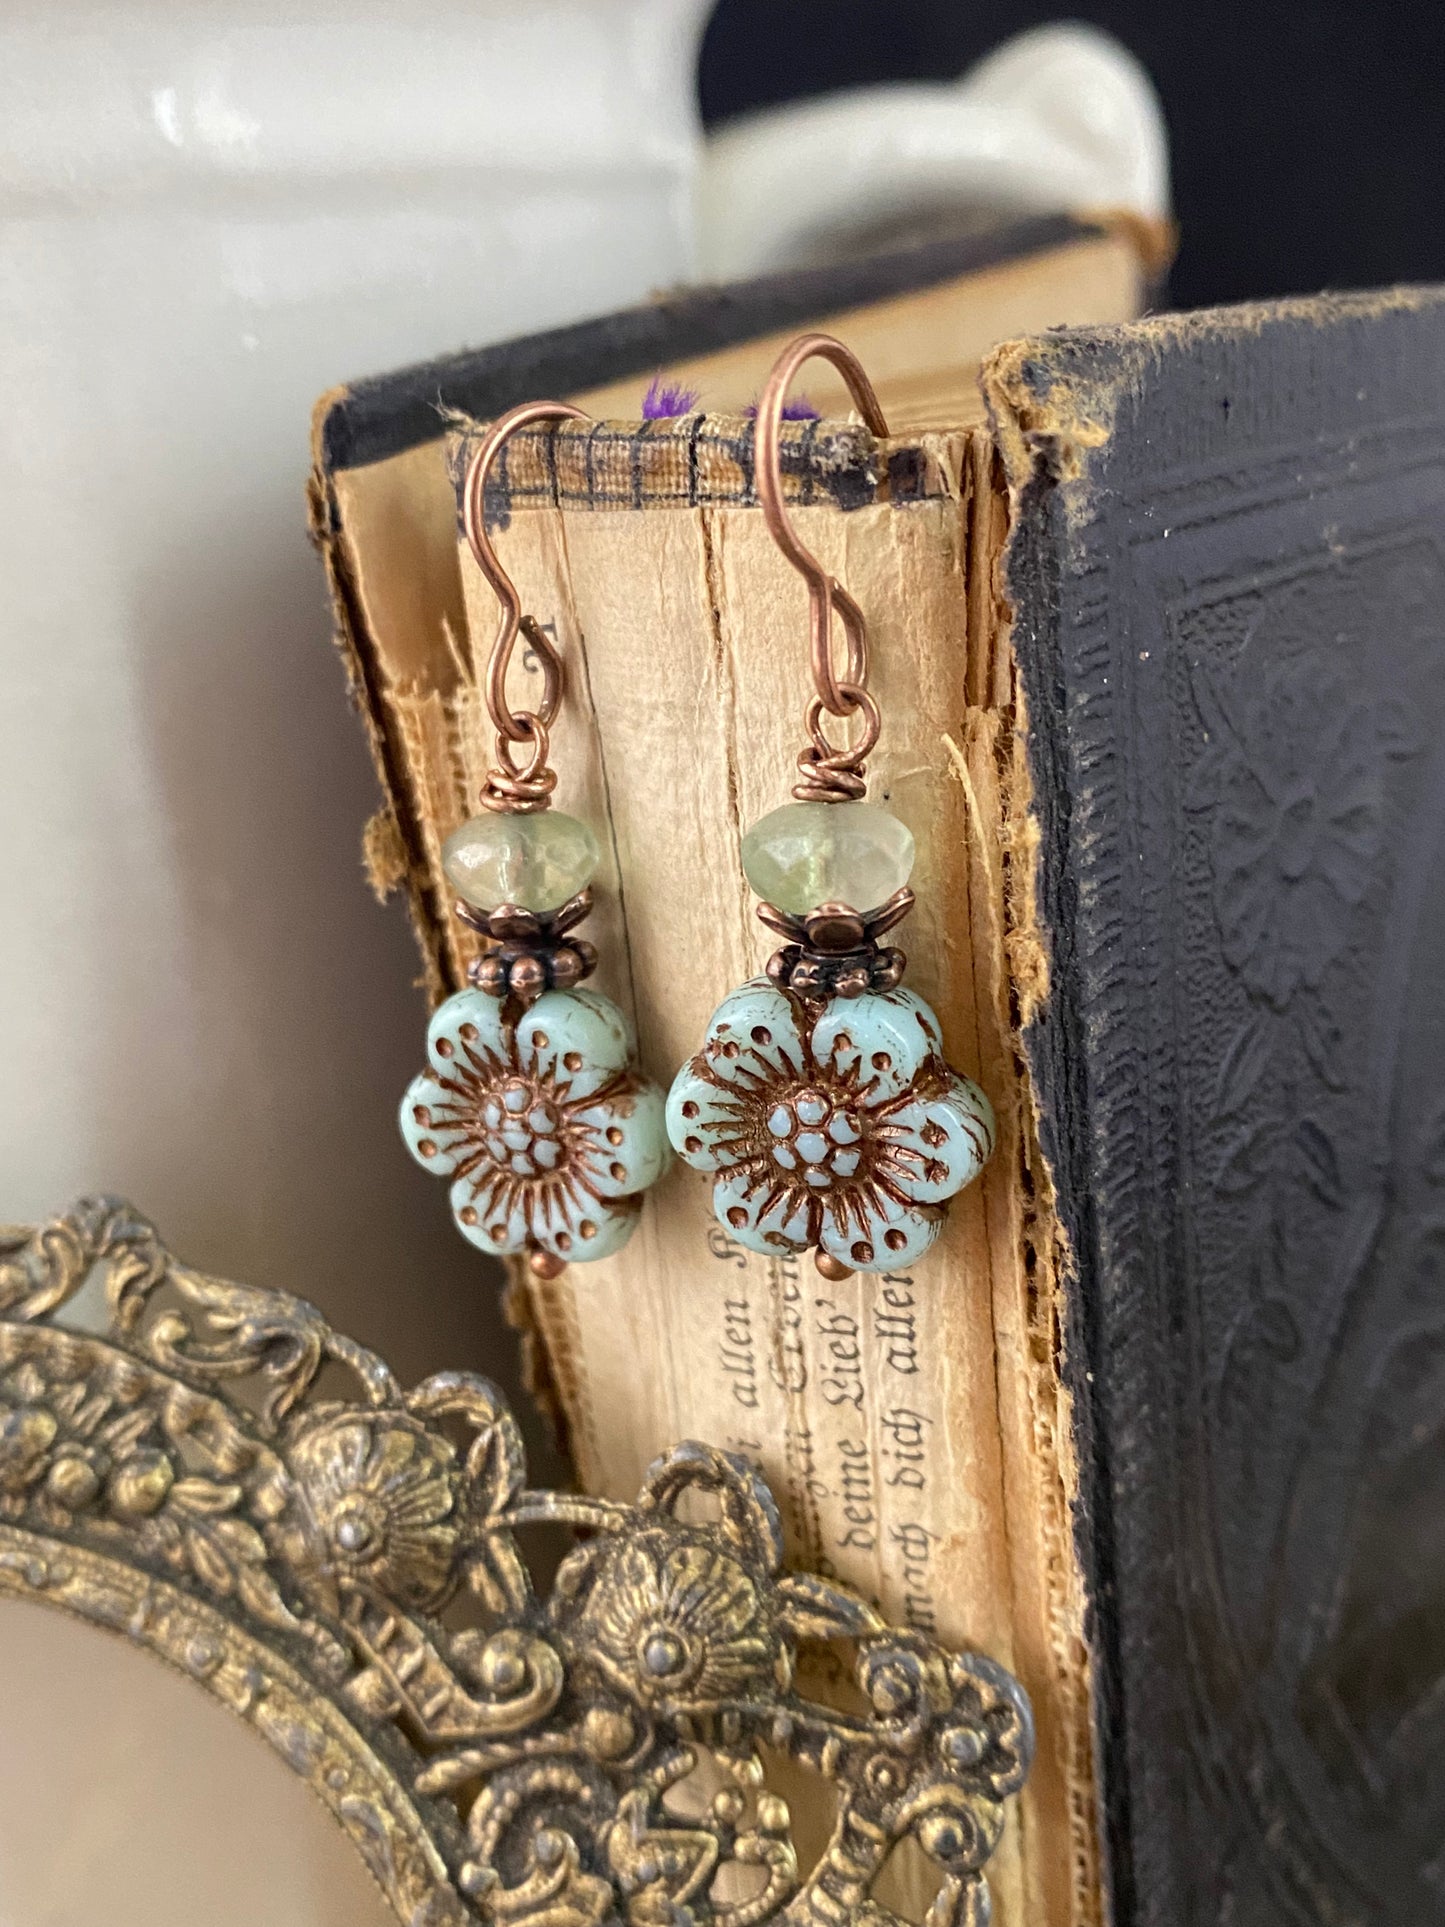 Flower Czech glass in light green and blue, copper metal earrings, jewelry